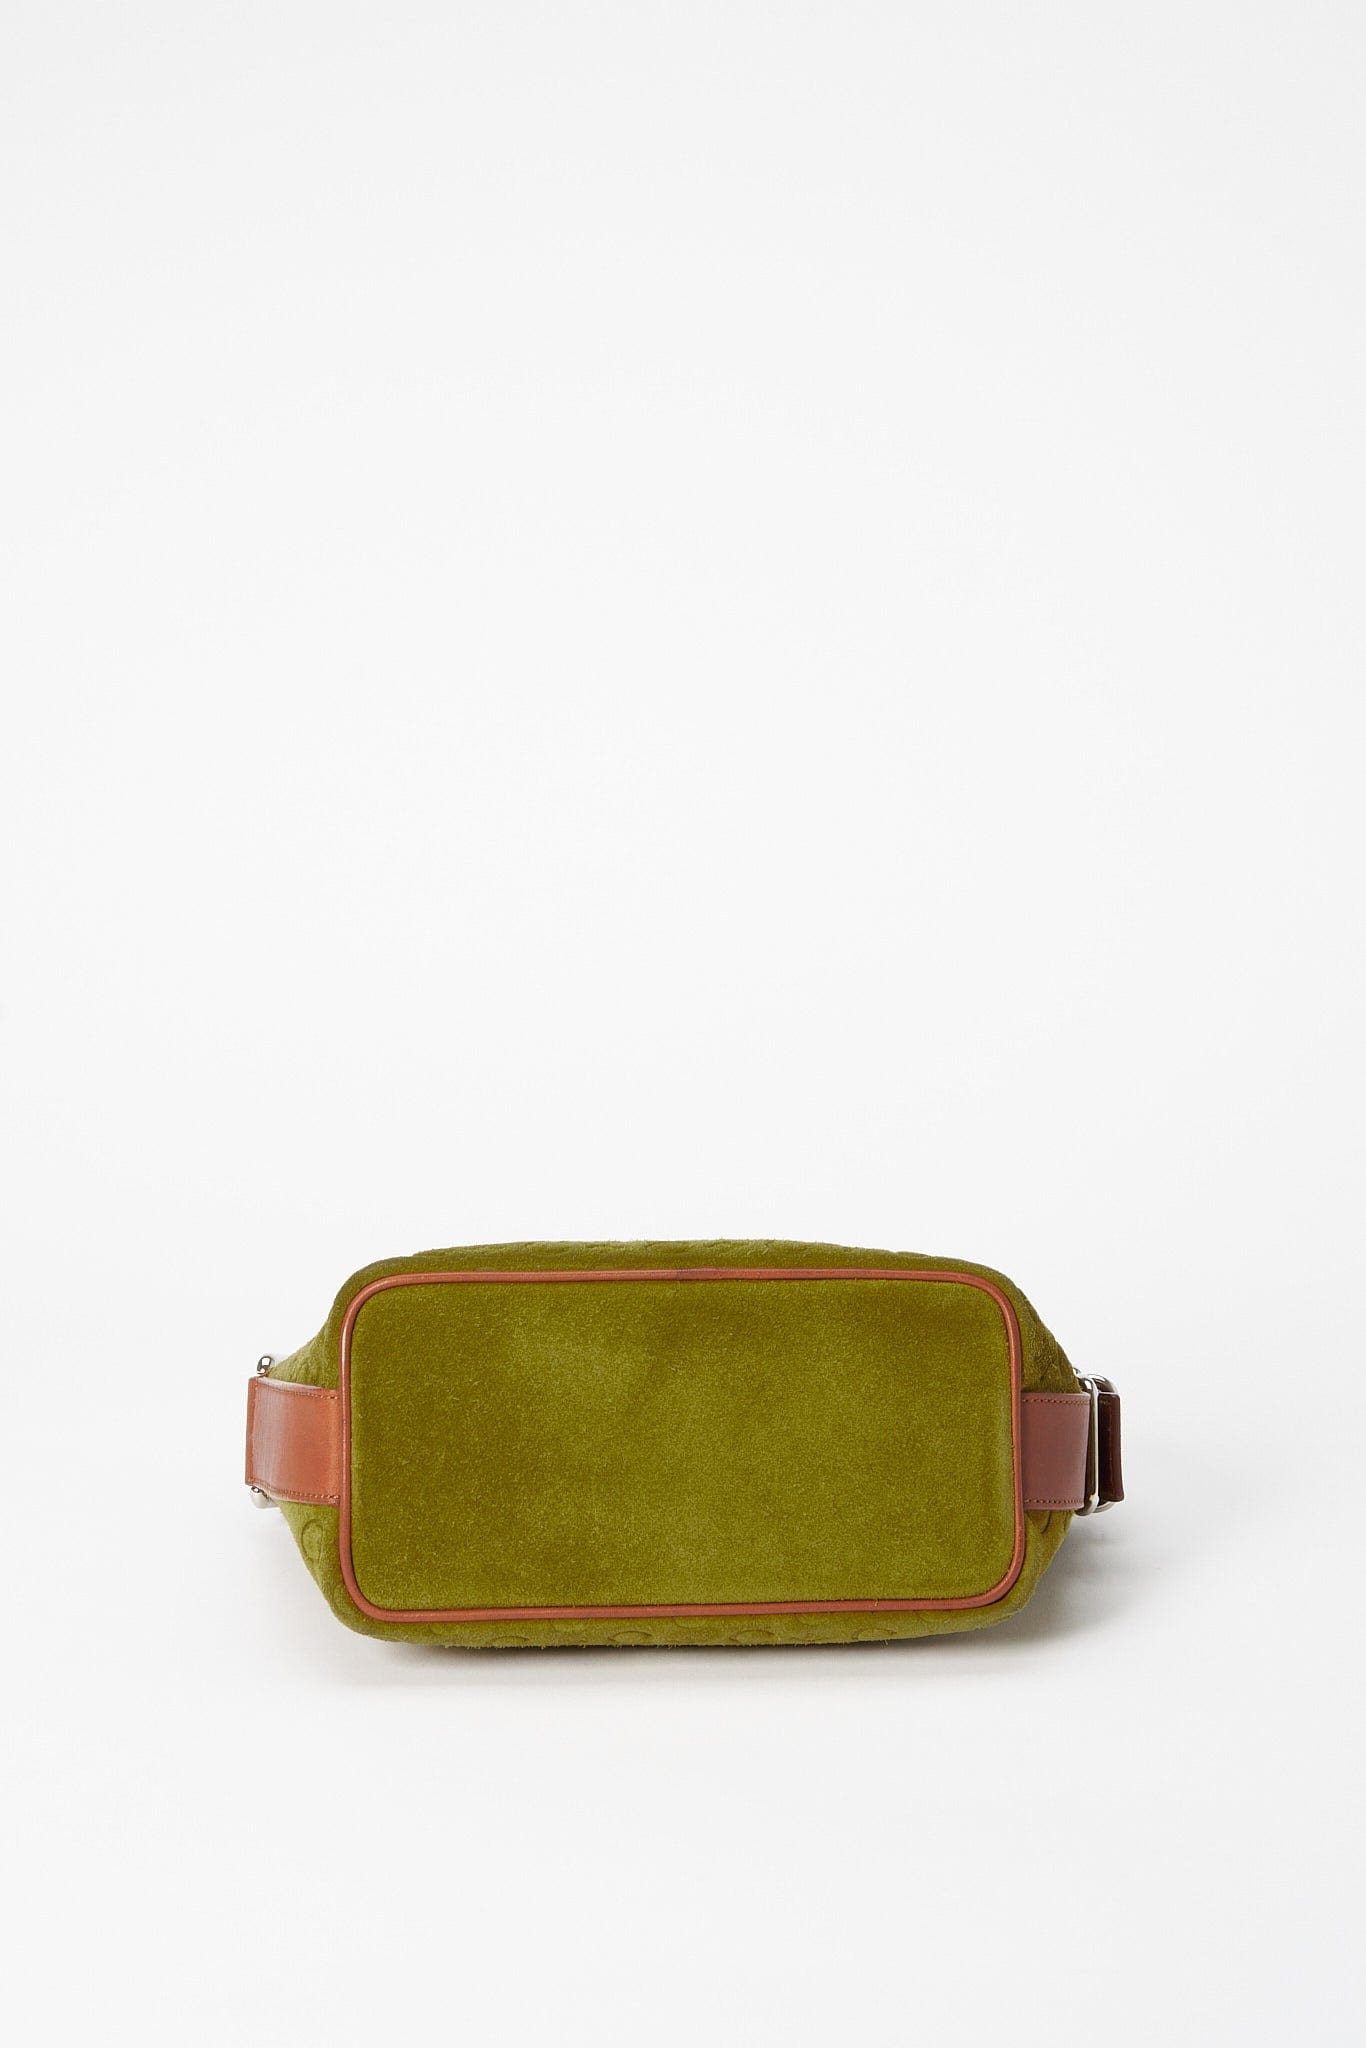 Vintage Celine Green Suede Shoulder Bag